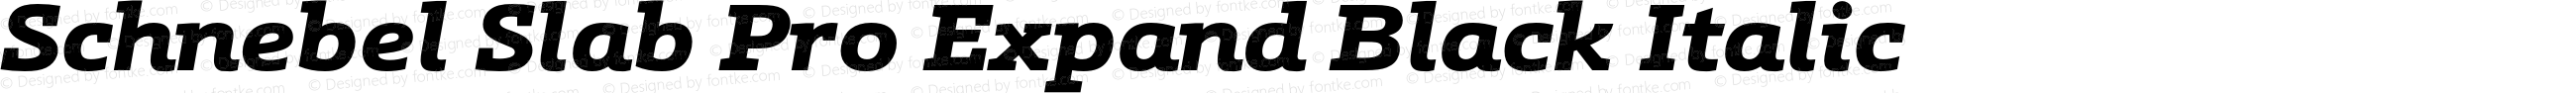 Schnebel Slab Pro Expand Black Italic